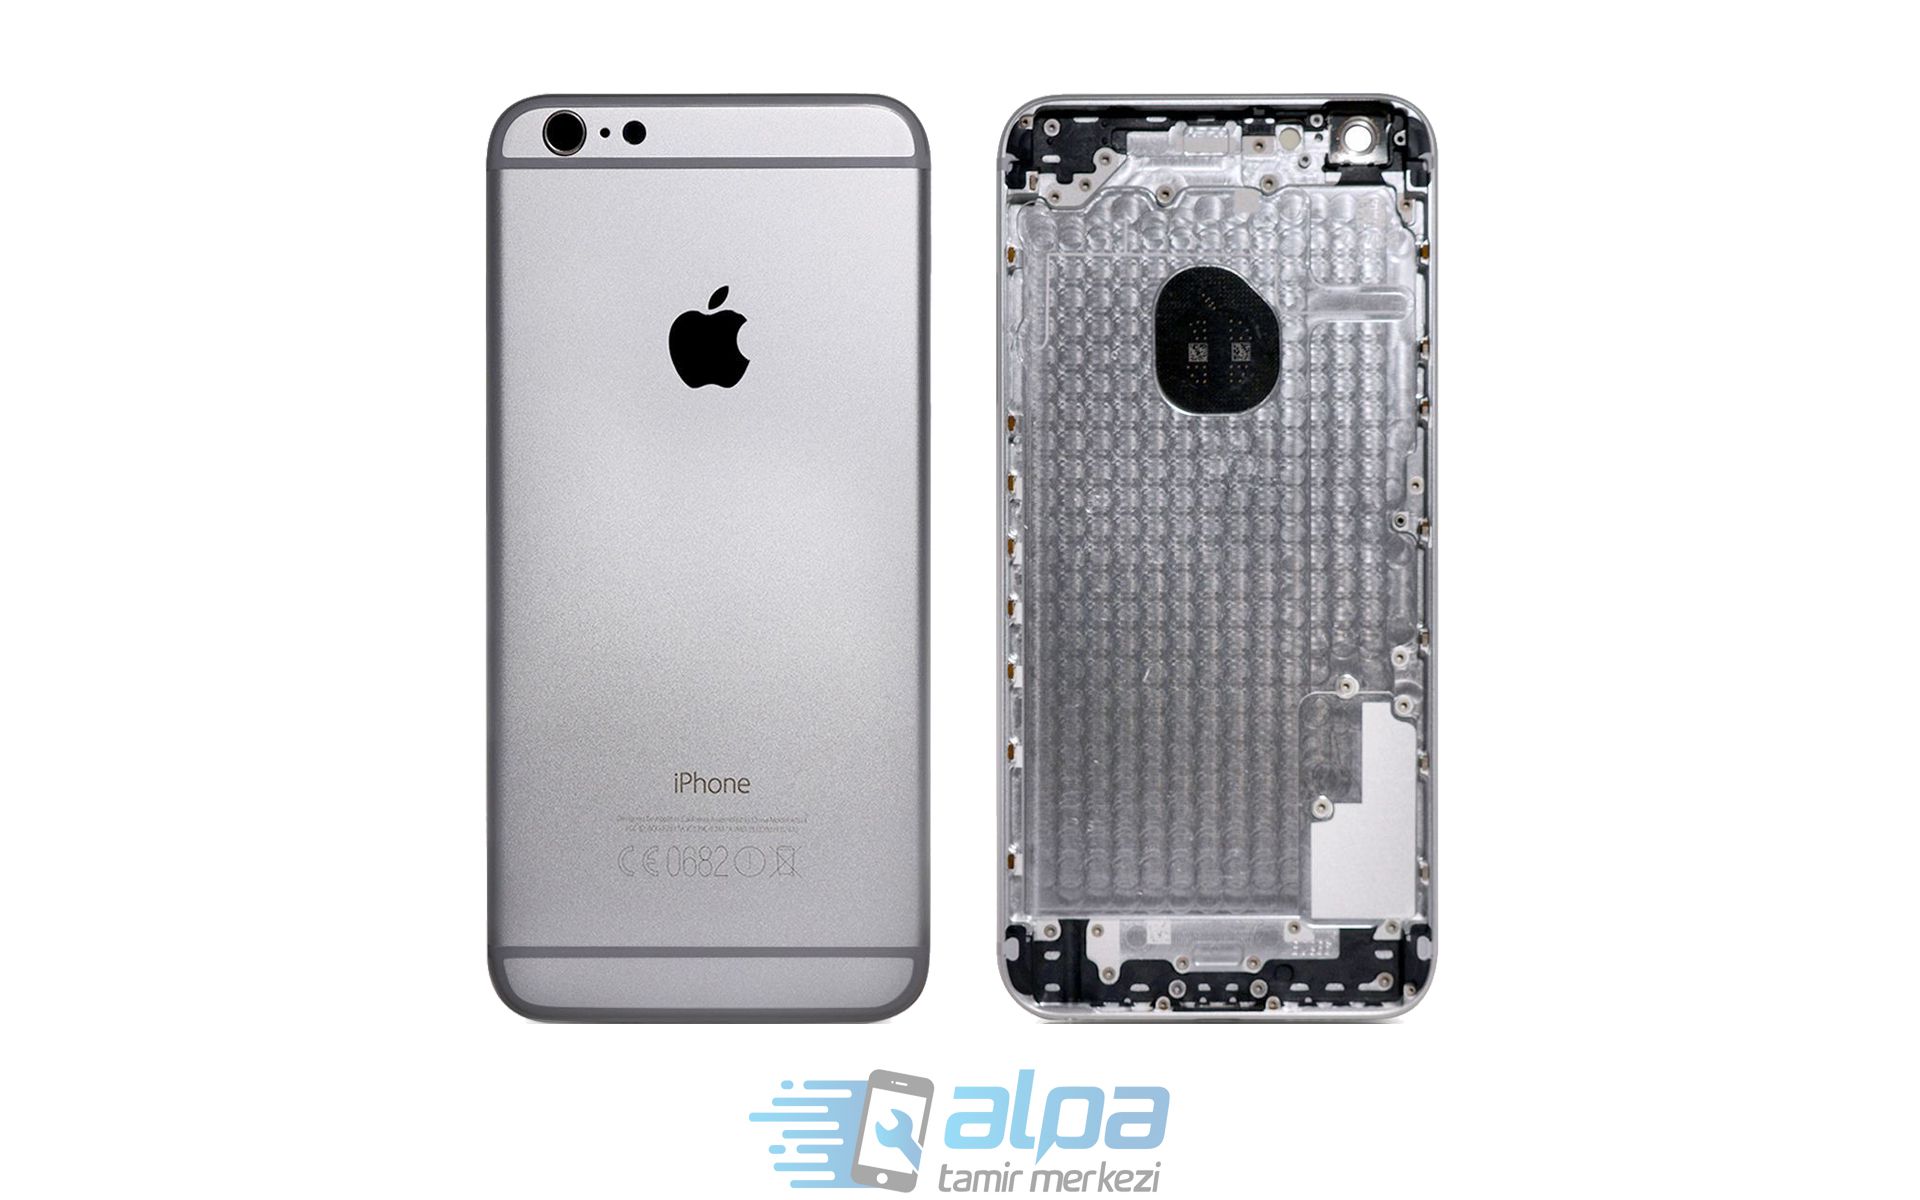 iPhone 6 Plus Kasa Değişimi Fiyatı 849 TL